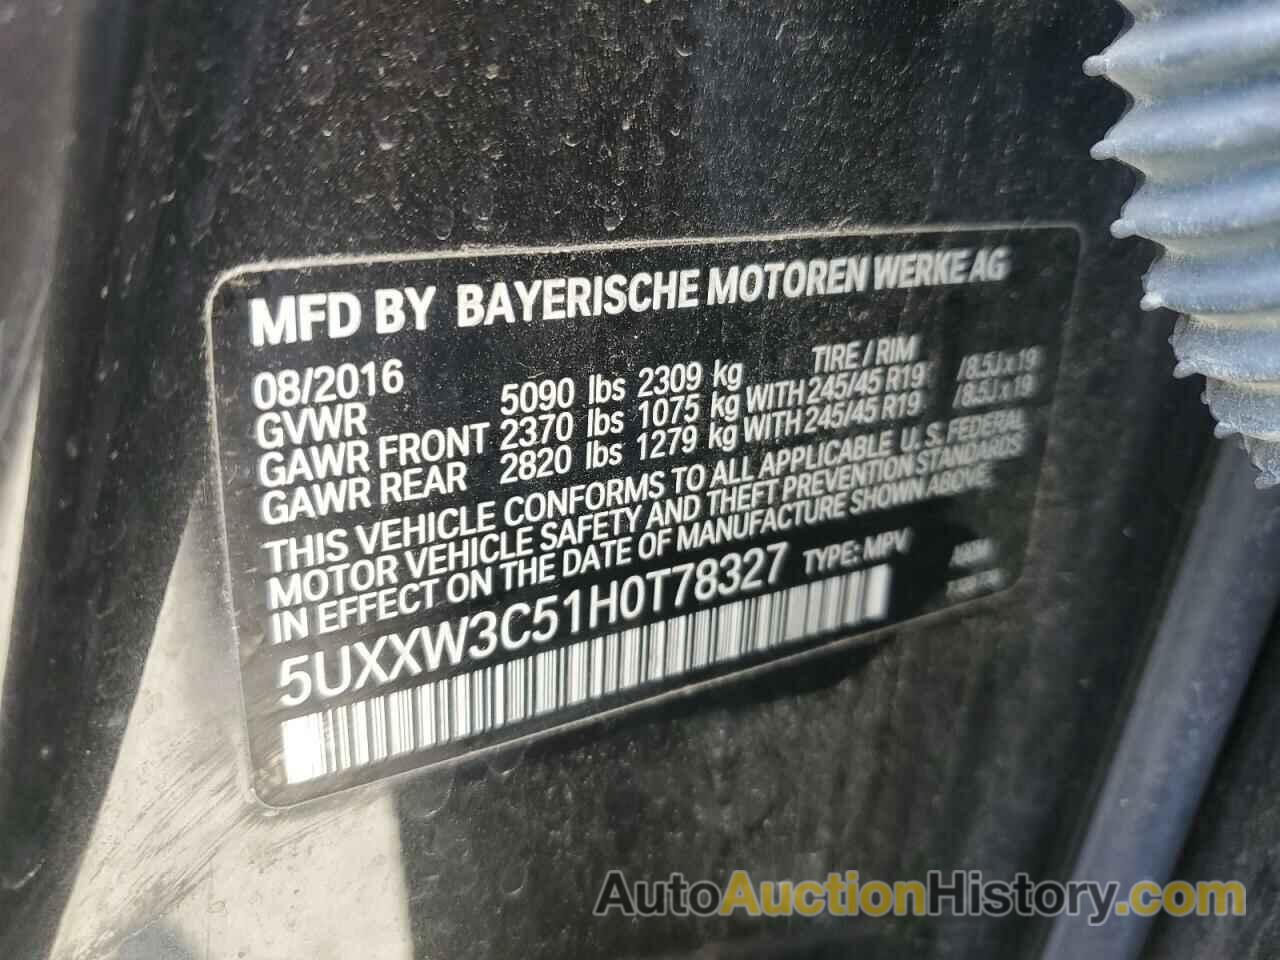 BMW X4 XDRIVE28I, 5UXXW3C51H0T78327